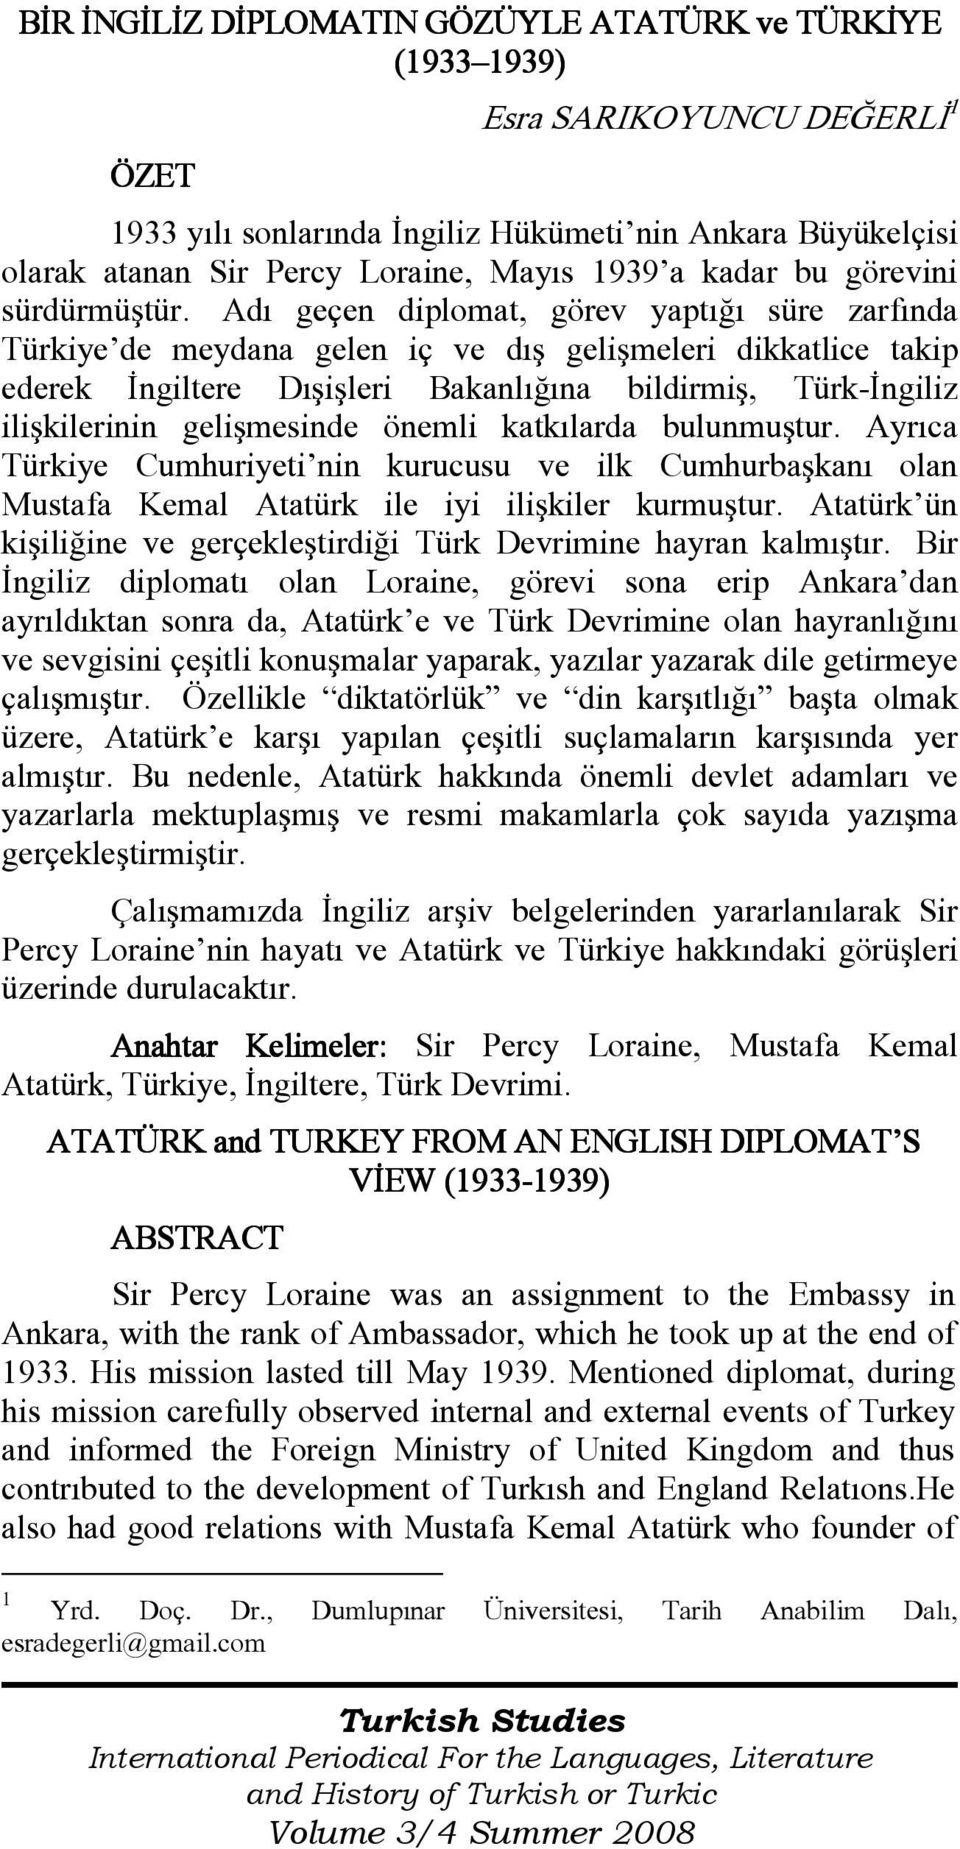 Adı geçen diplomat, görev yaptığı süre zarfında Türkiye de meydana gelen iç ve dış gelişmeleri dikkatlice takip ederek Đngiltere Dışişleri Bakanlığına bildirmiş, Türk-Đngiliz ilişkilerinin